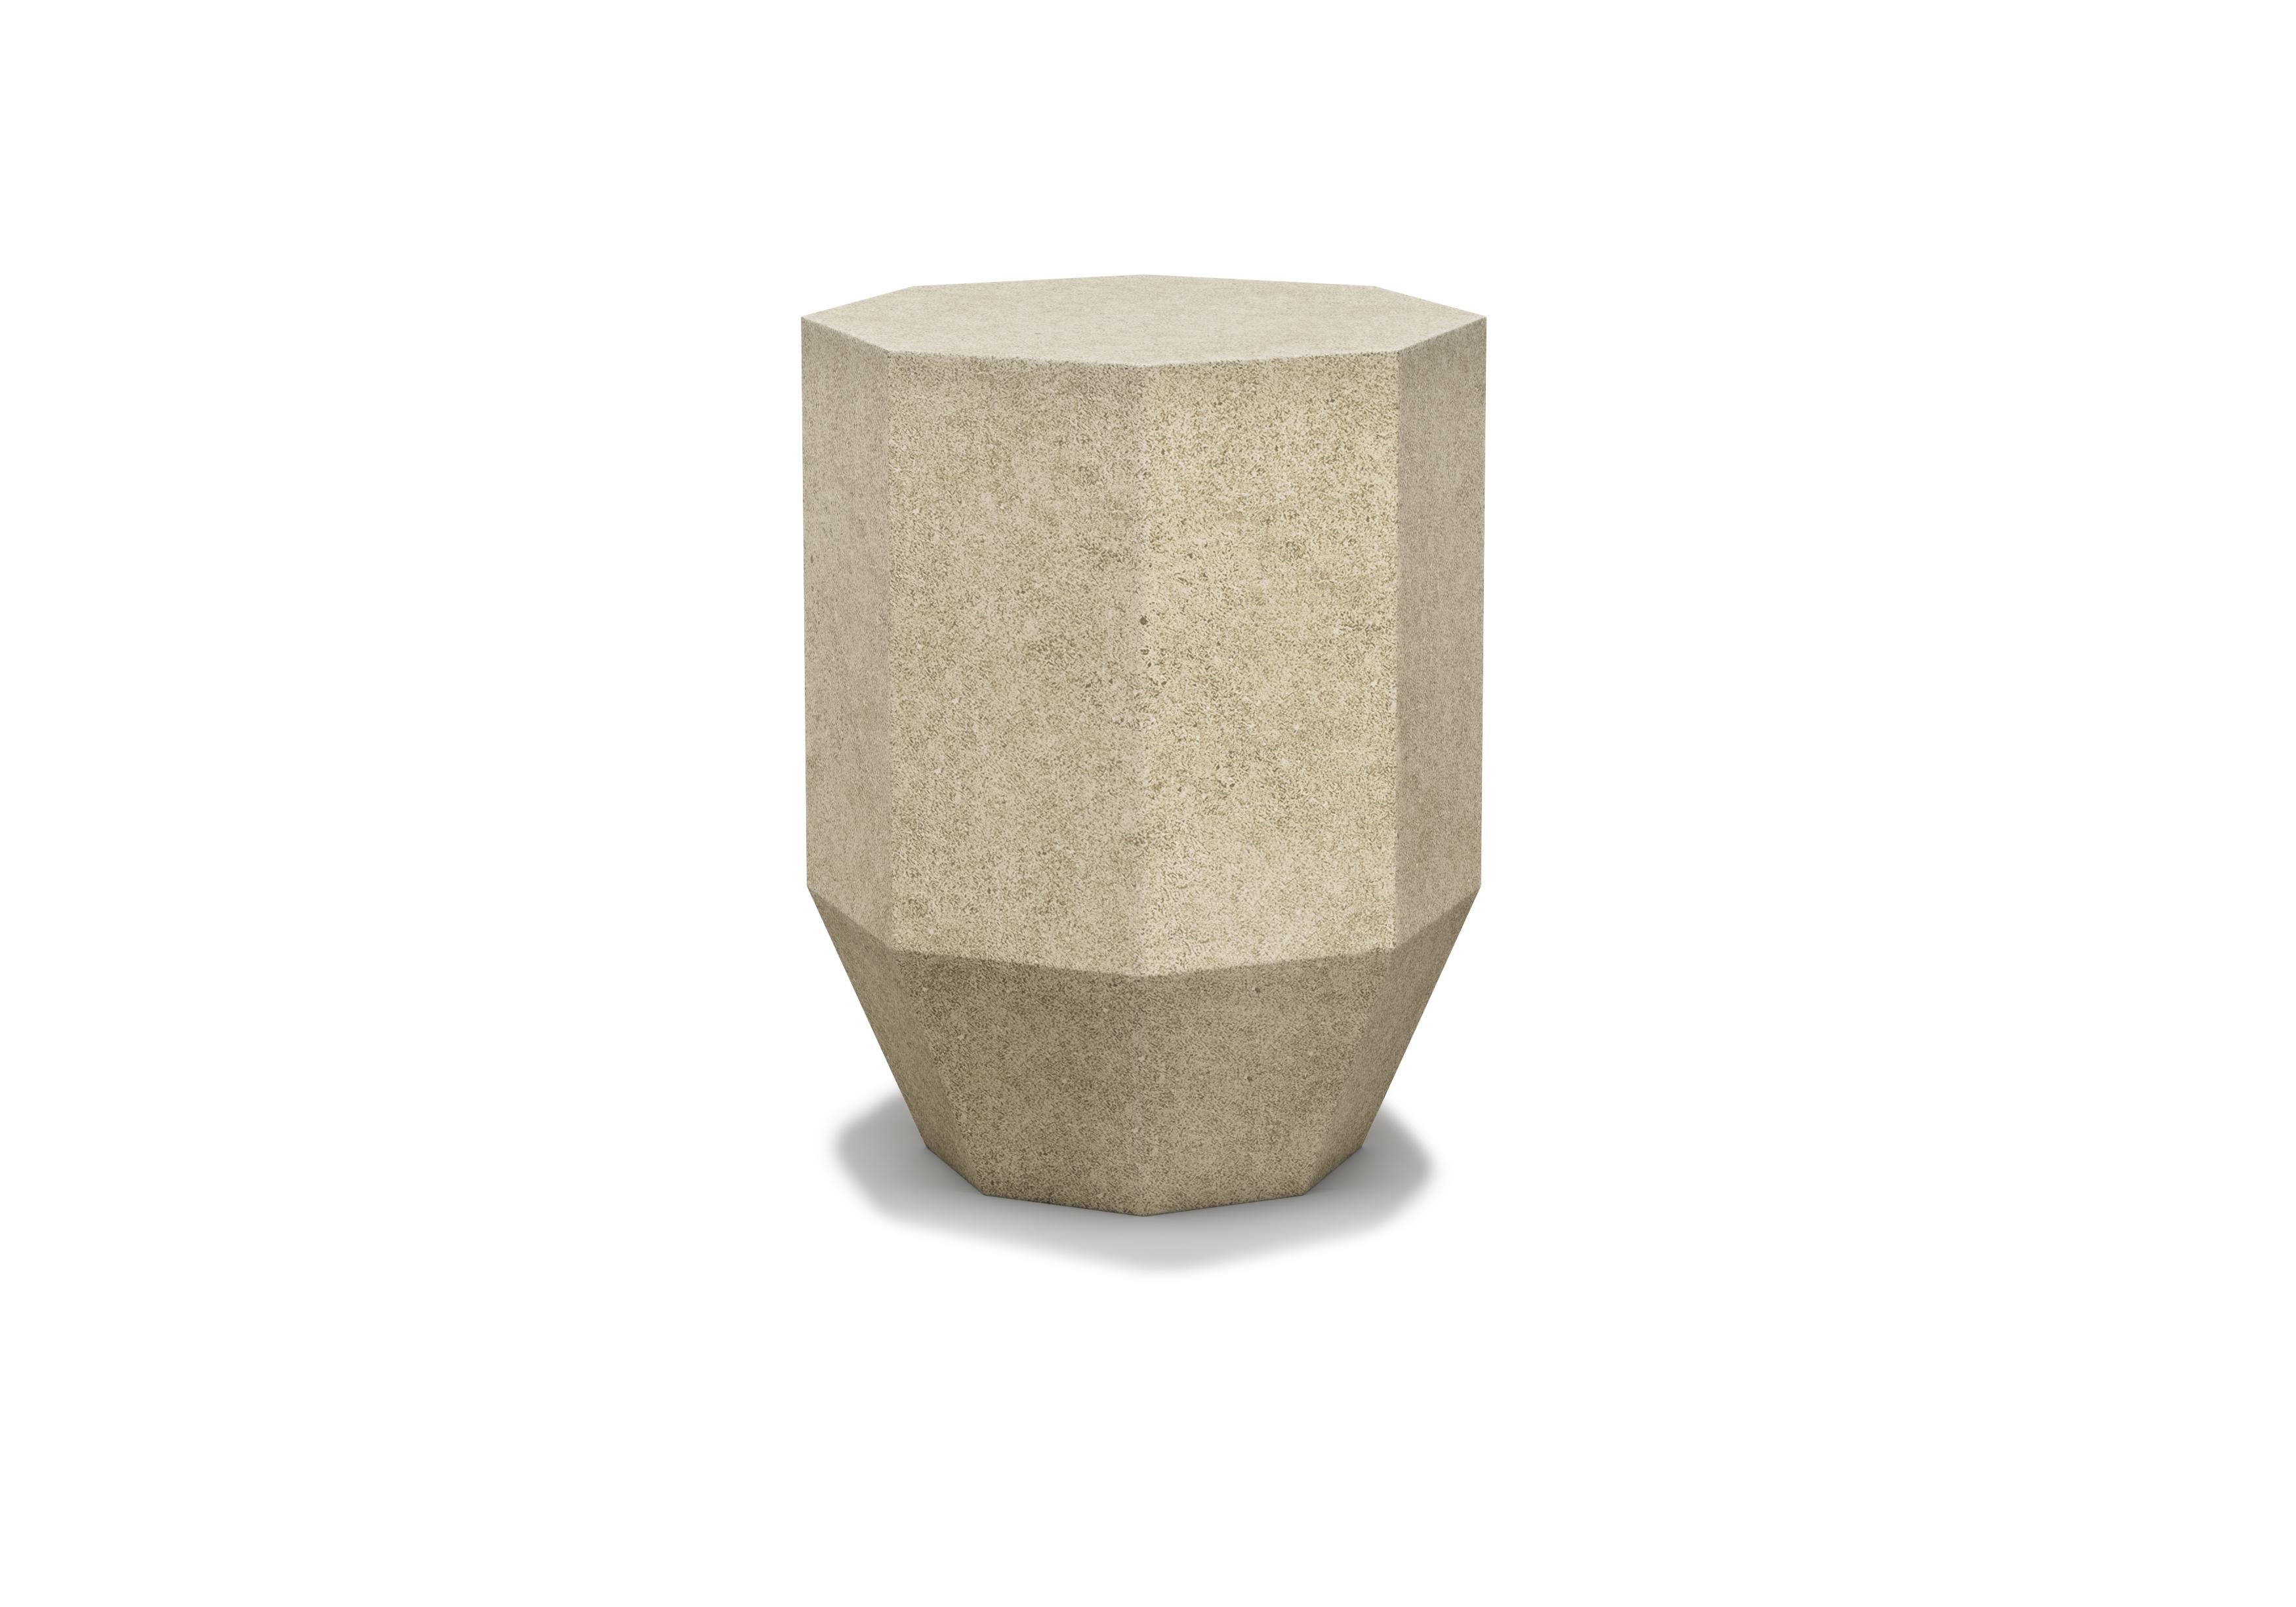 Gemma ist ein achteckiger Beistelltisch aus Zement für den Garten.

Die Gemma Collection ist ein kraftvoller Entwurf, der die abgerundeten Linien und den Komfort miteinander verbindet, die Kraft der Kontraste in das gesamte Design einbezieht und das